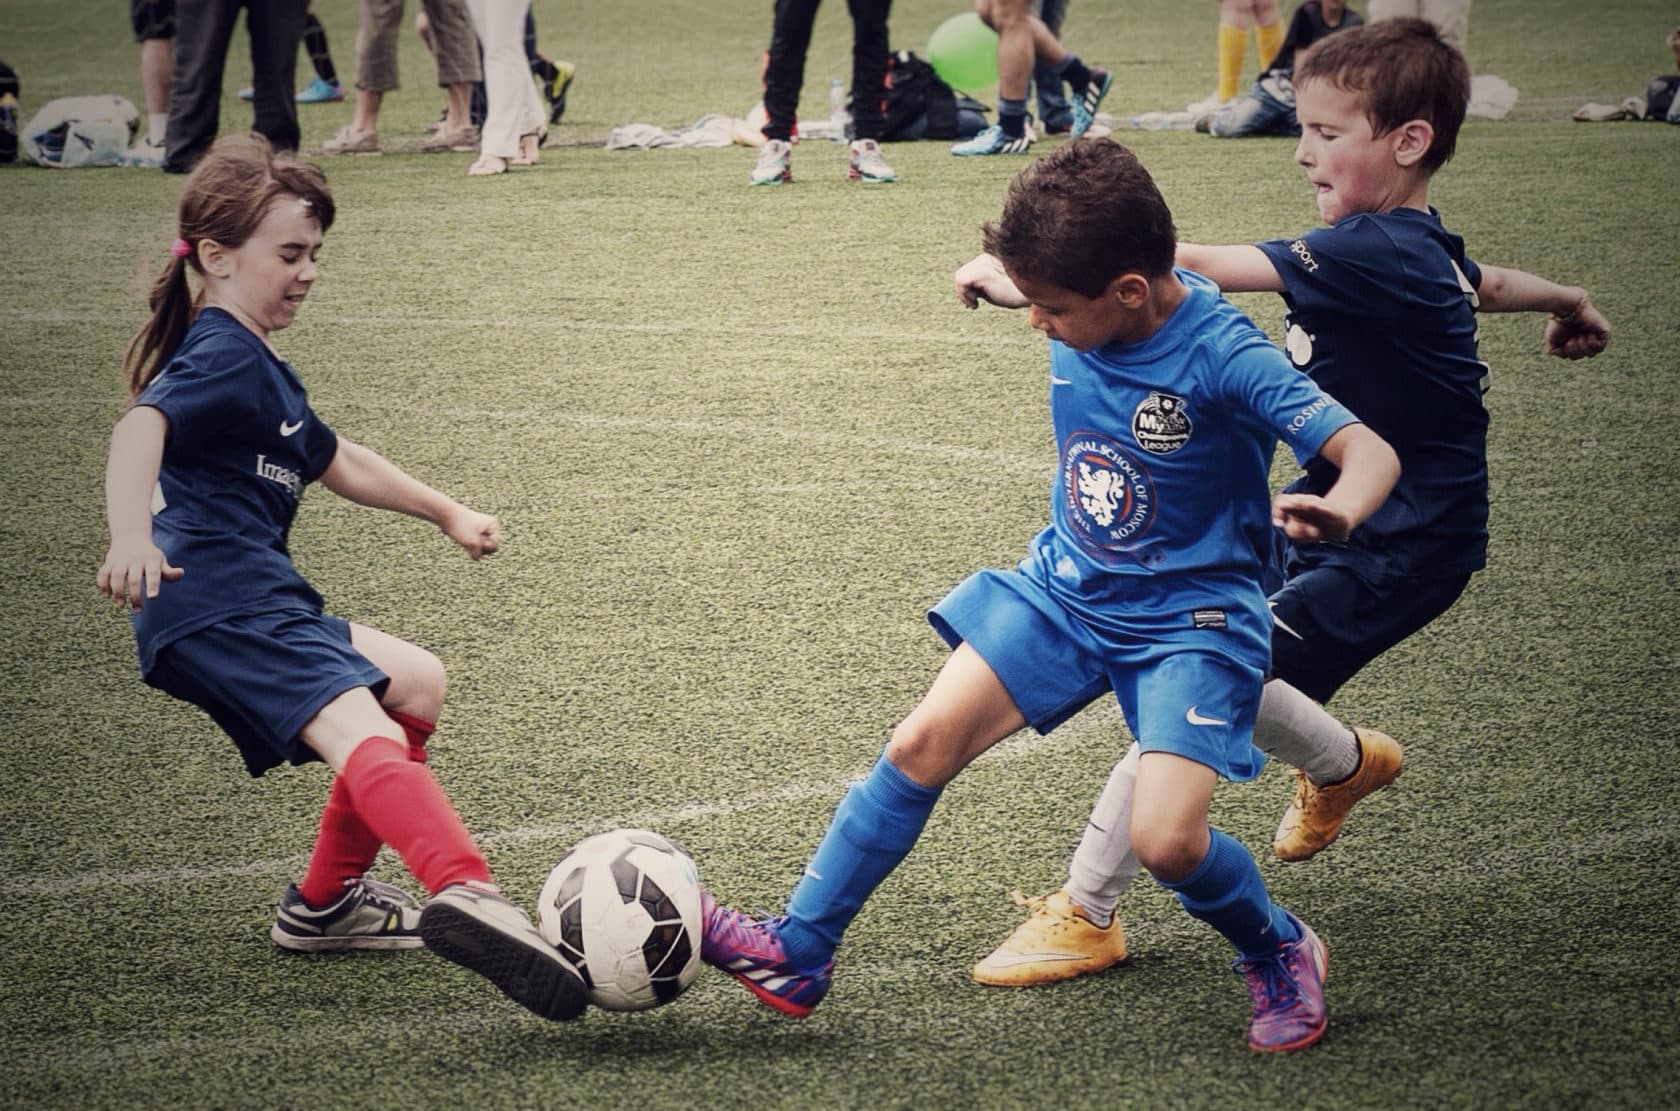 Предложена новая система тренировок для юных футболистов